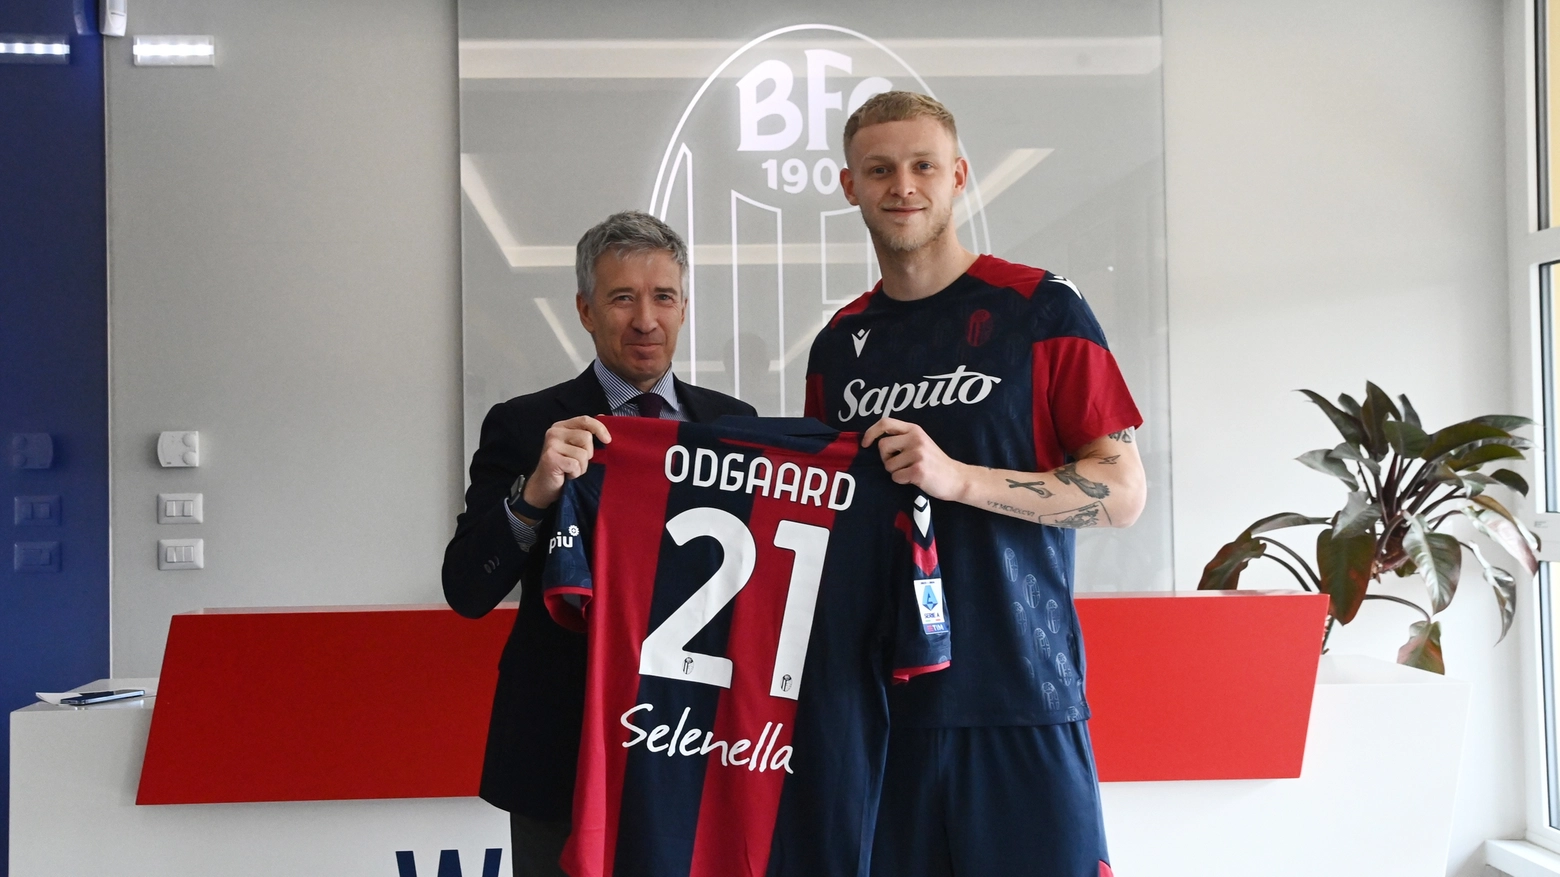 Bologna Fc, la presentazione di Jens Odgaard: "Questa è una grande occasione per me"